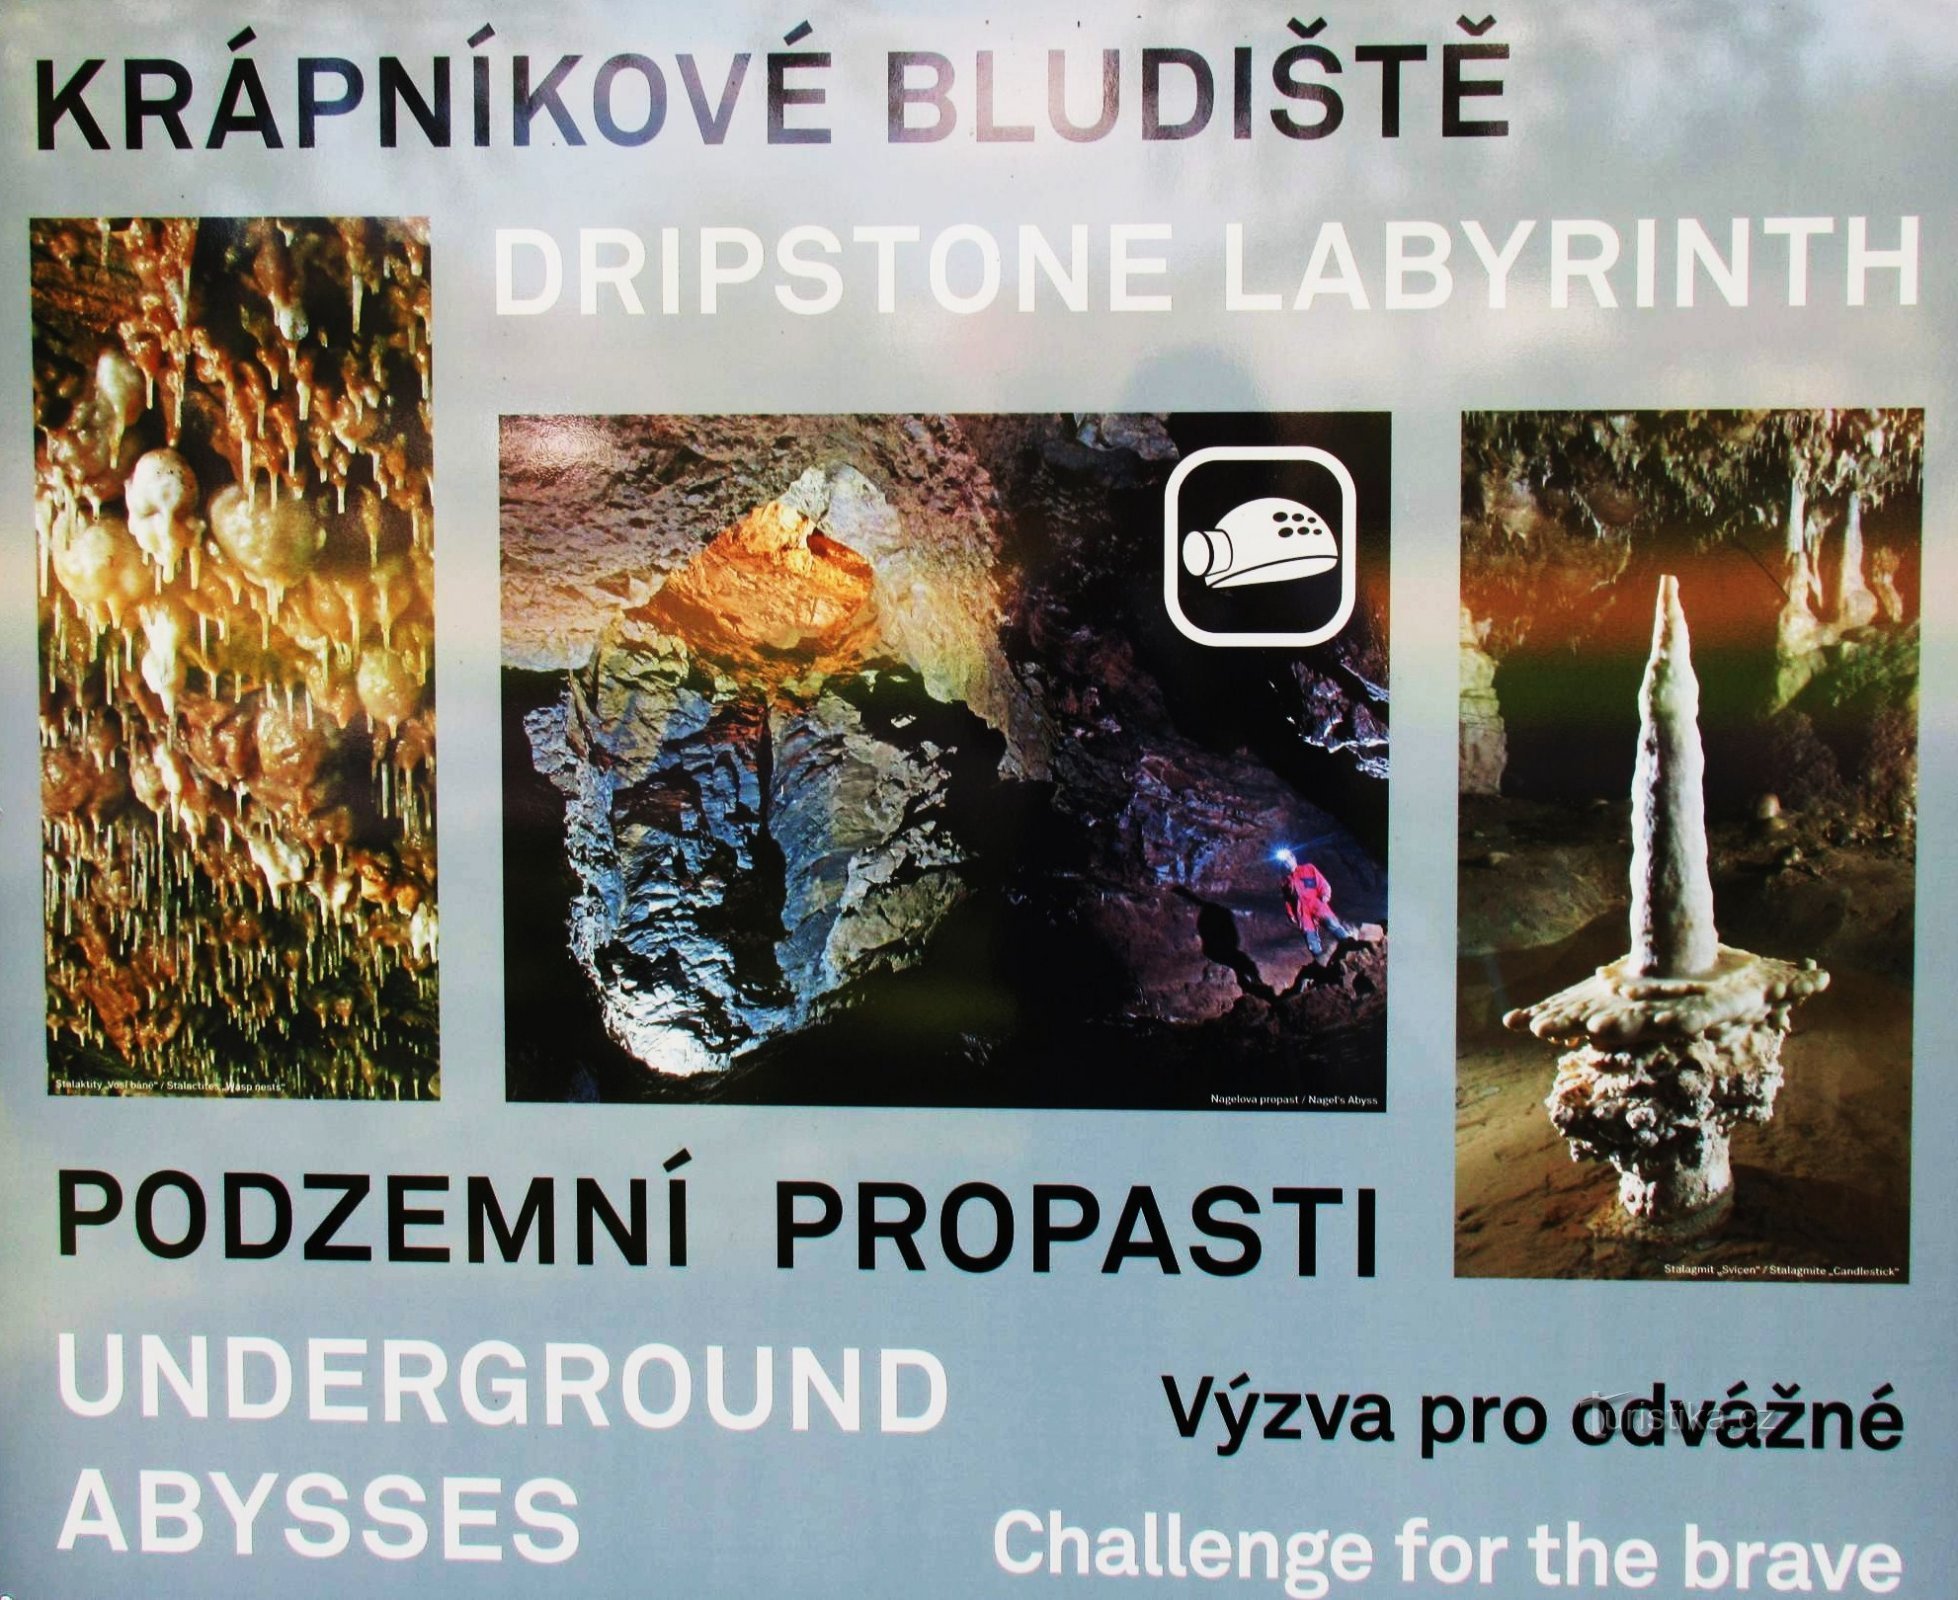 Để có trải nghiệm trong các hang động Sloupsko - Šošůvské